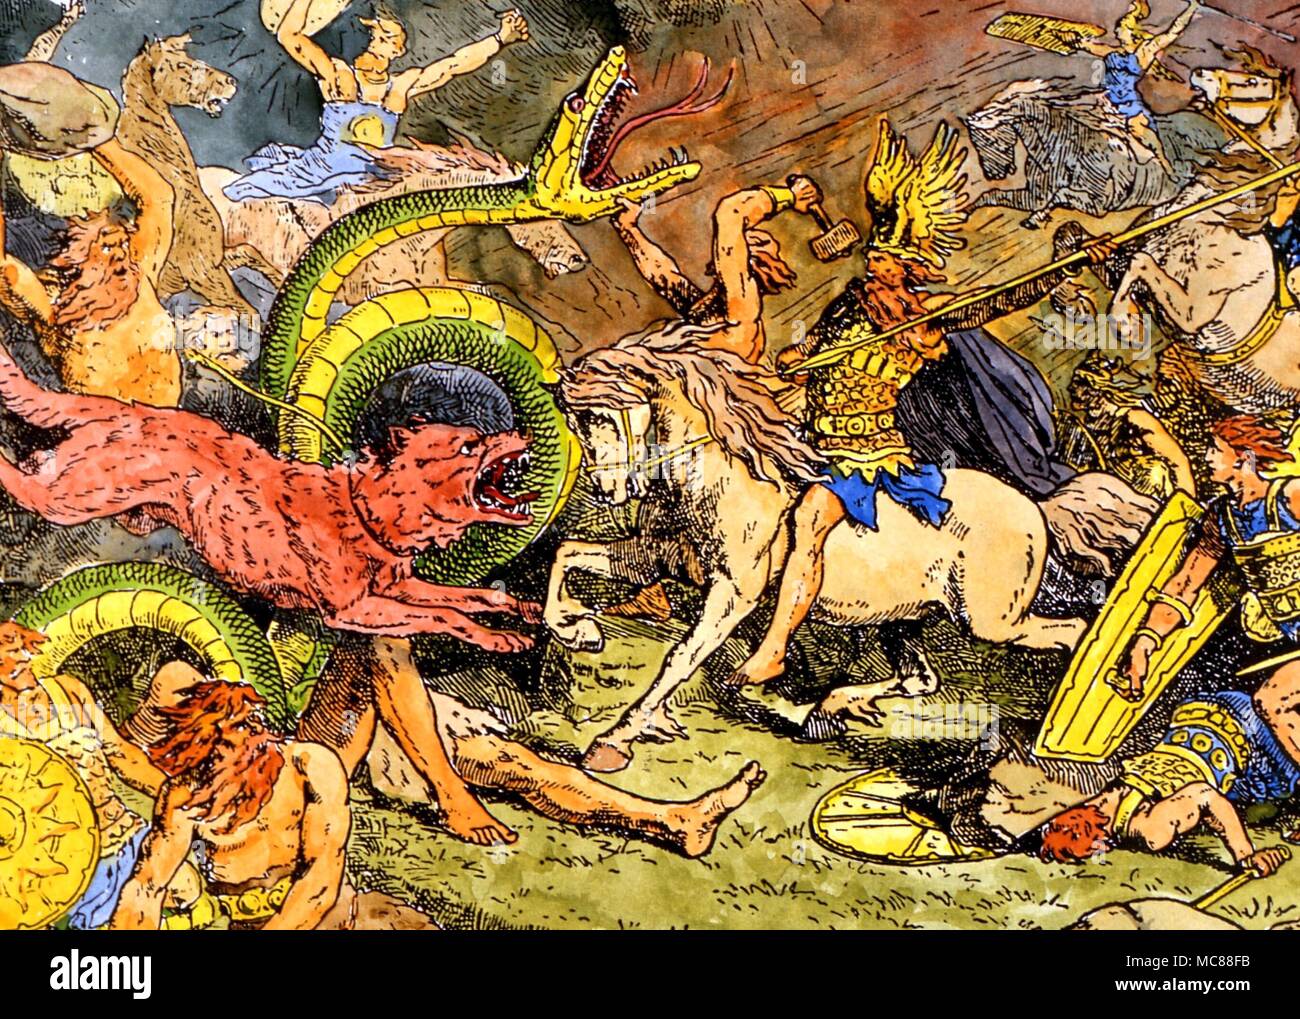 Le loup et le serpent Fenris Wolf à Ragnarok (le crépuscule des dieux) avec le serpent de Midgard en arrière-plan. Après un dessin par Johannes Gherts. Allemand du 19e siècle Banque D'Images